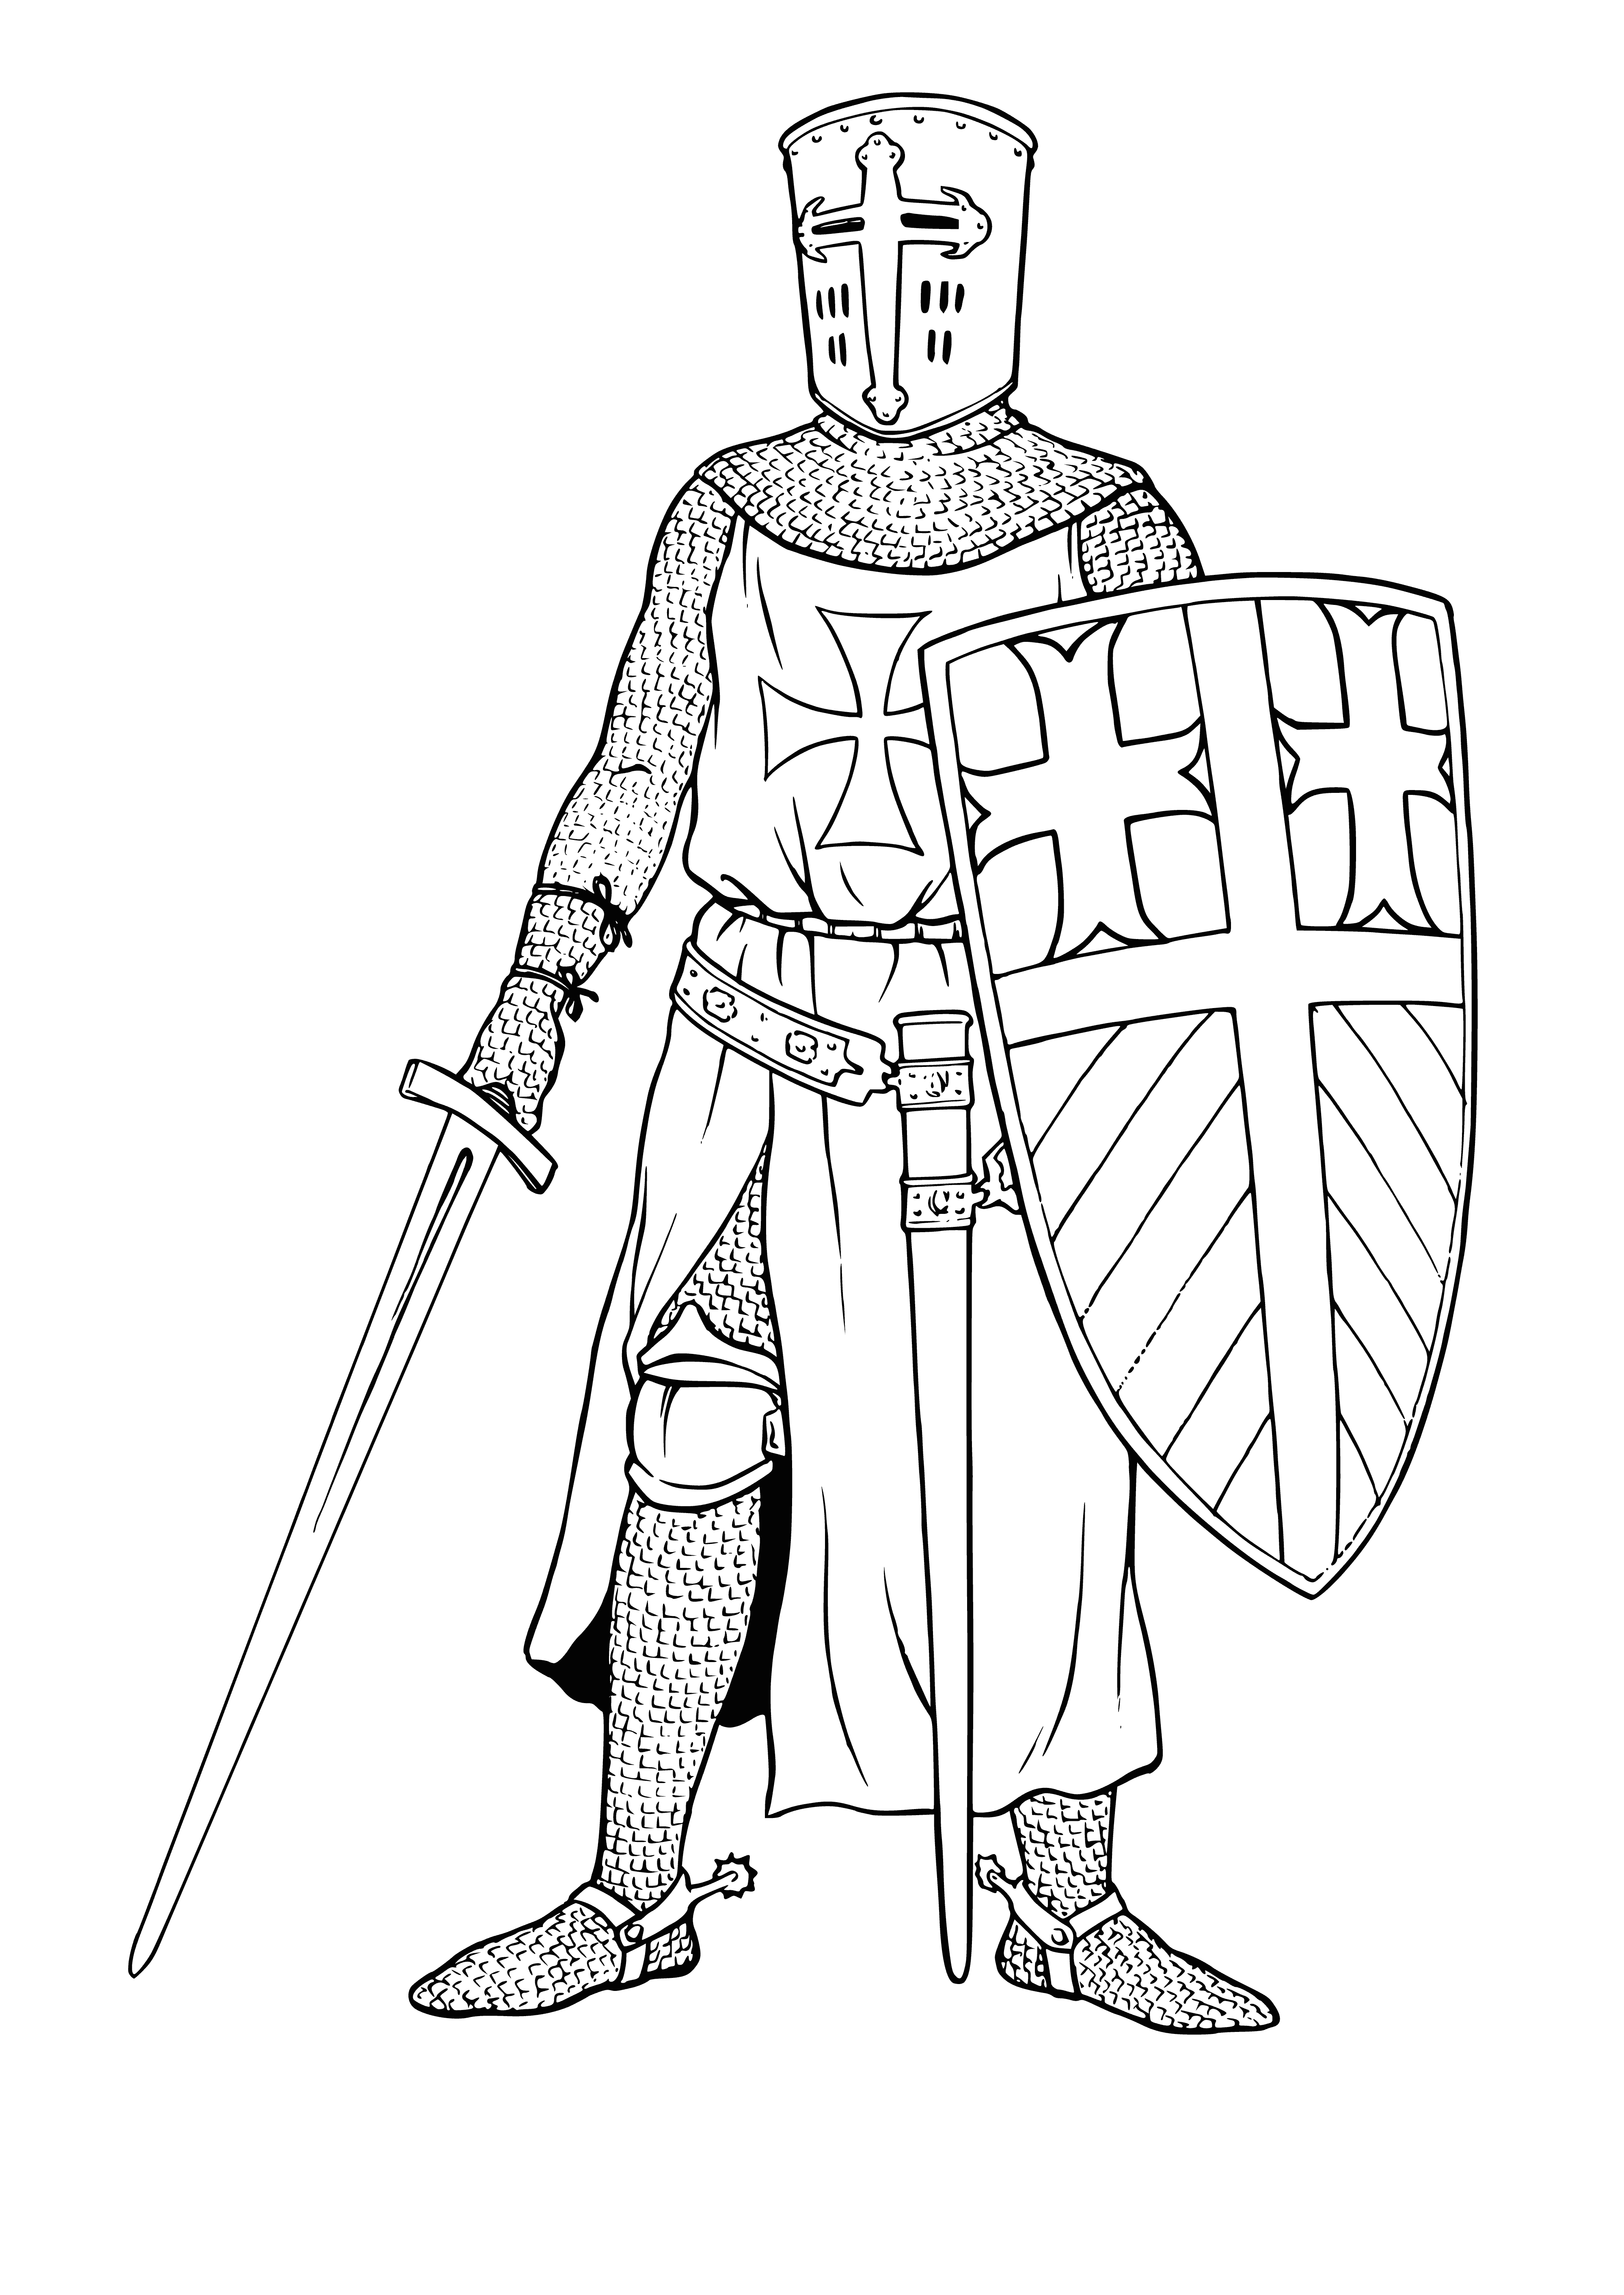 Knight Crusader coloring page